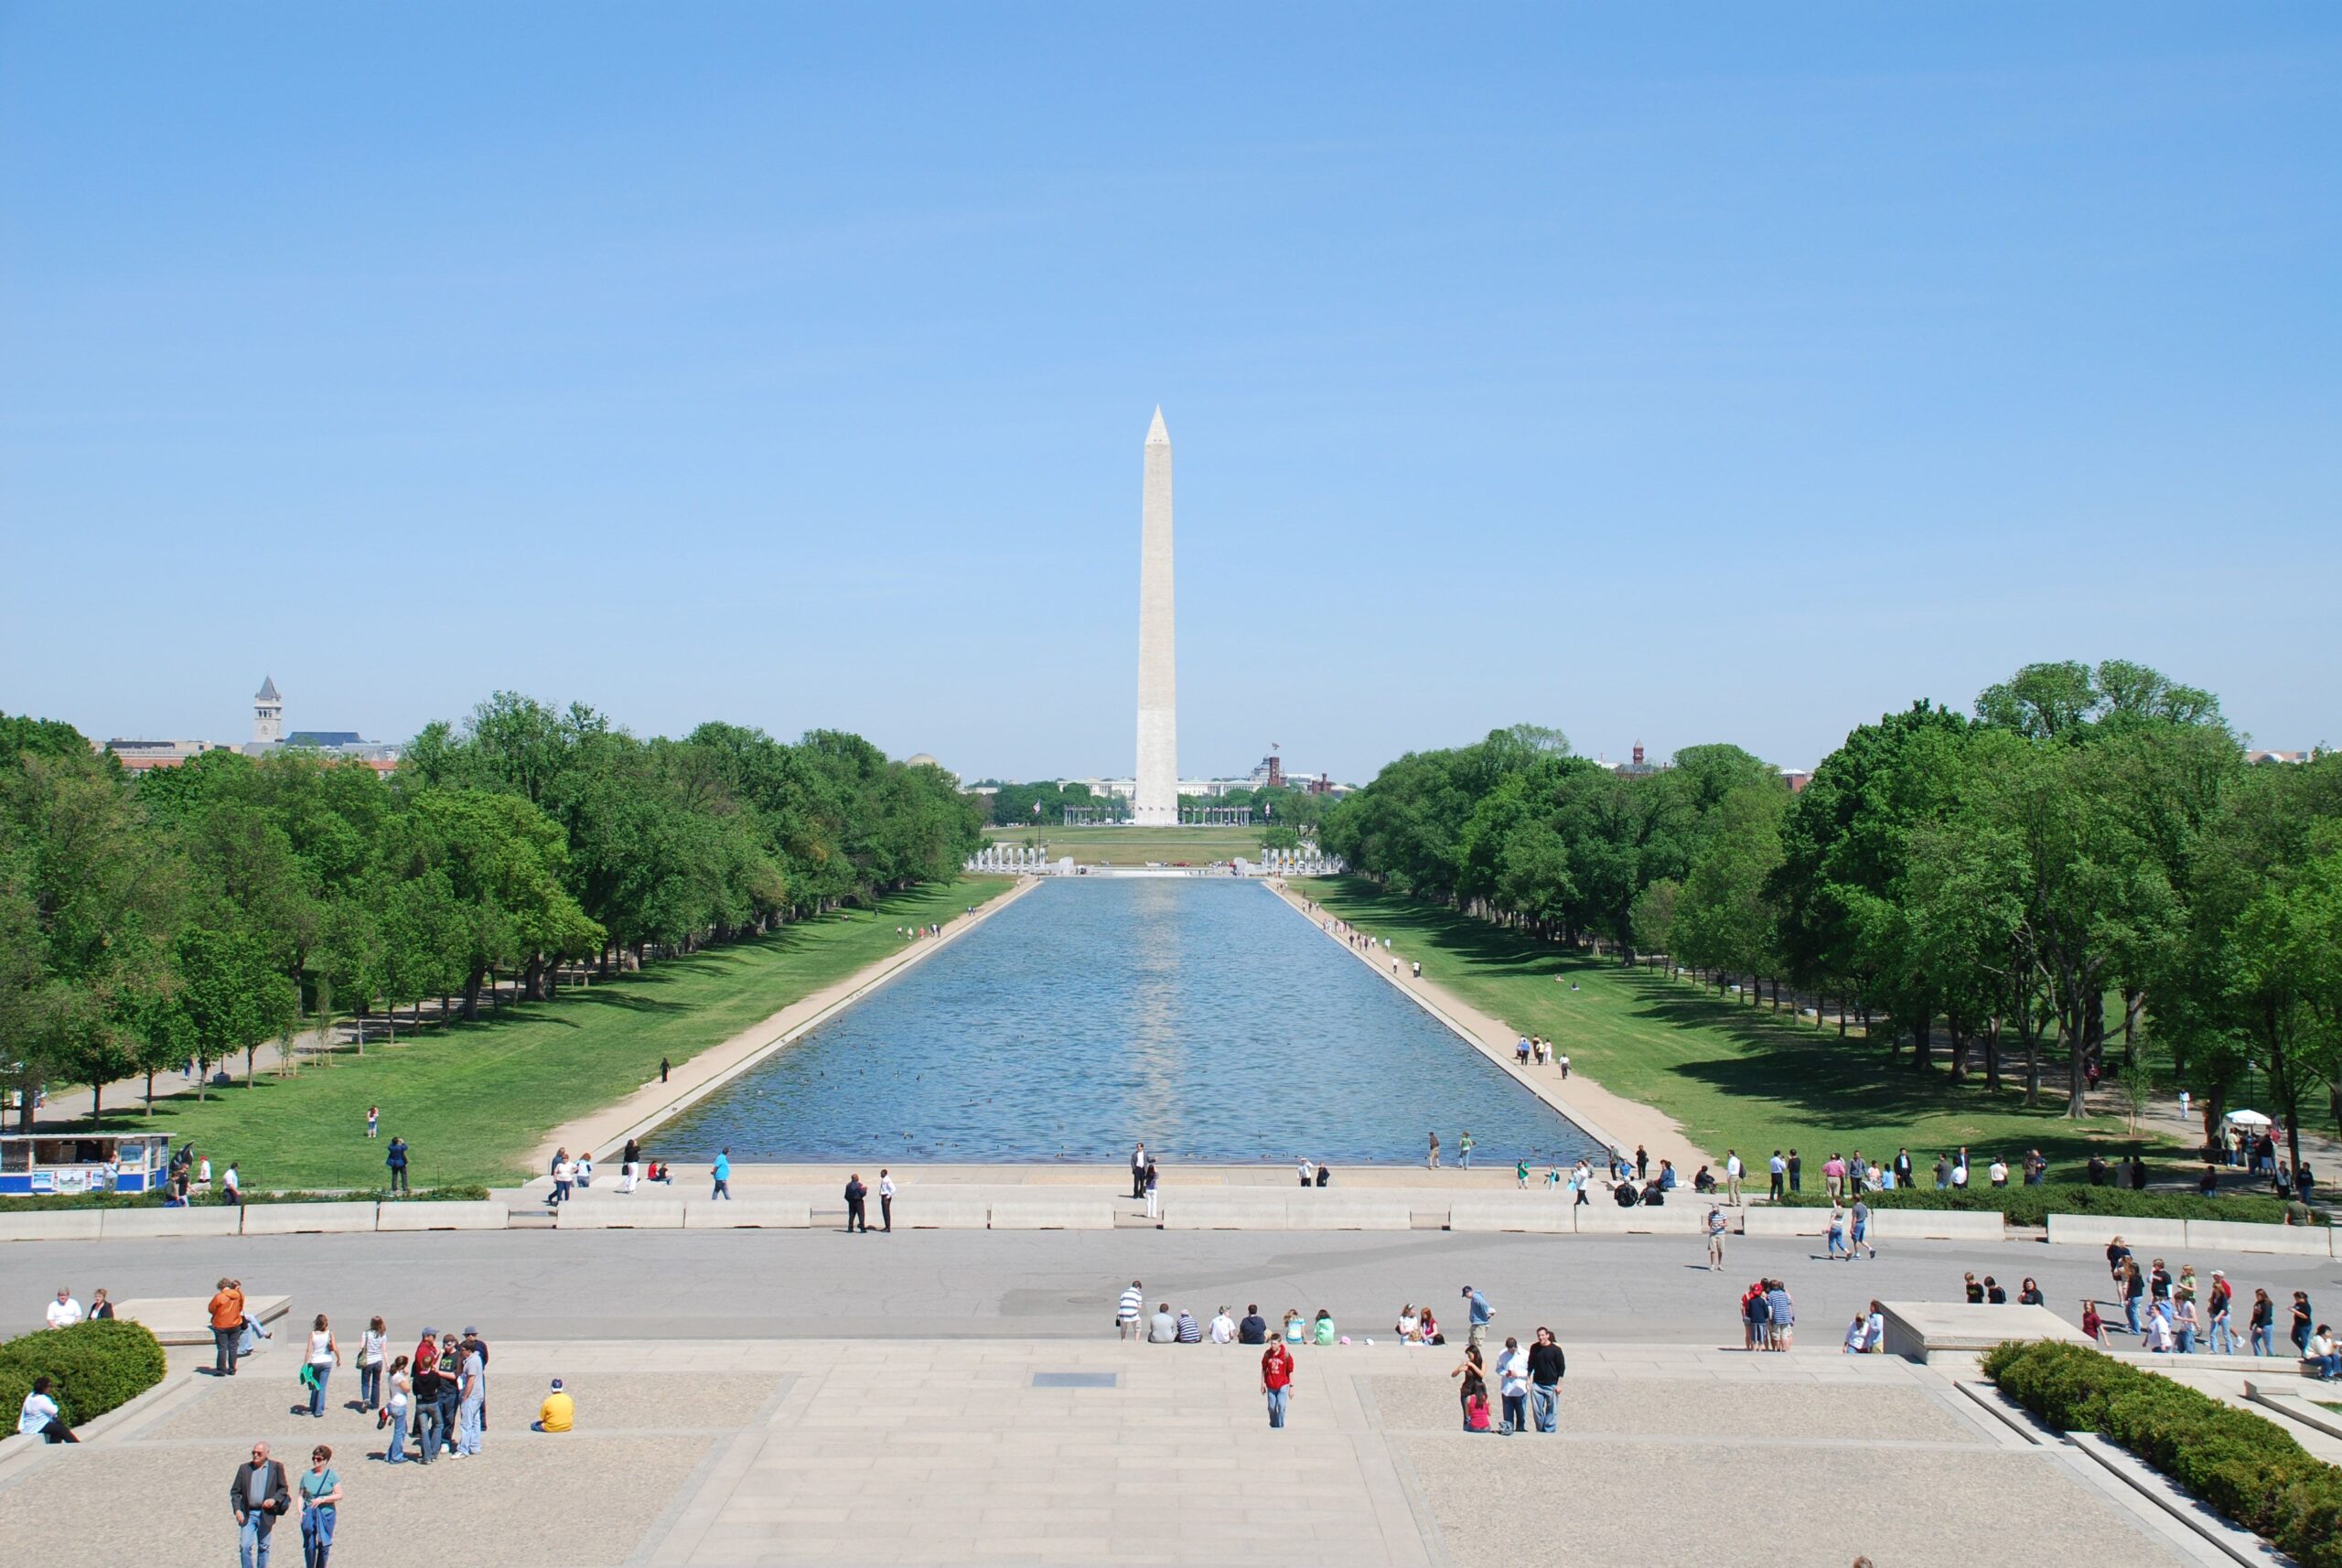 Washington Monument, Reflecting Pool, National Mall Travel